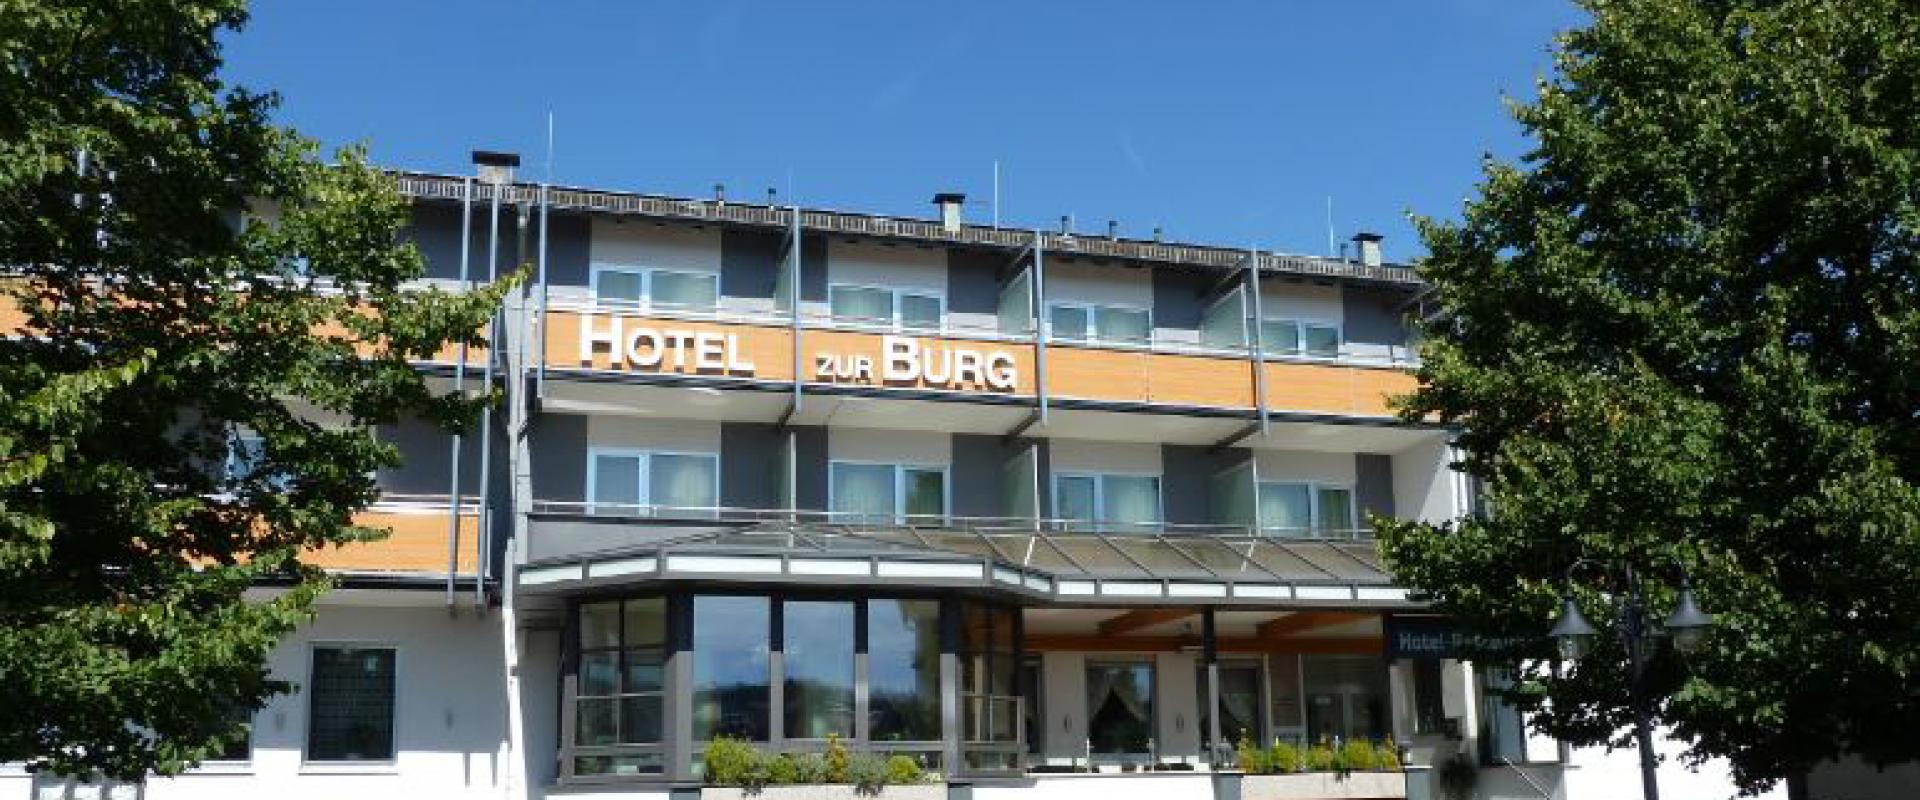 13589 Biker Hotel Zur Burg im Taunus.jpg